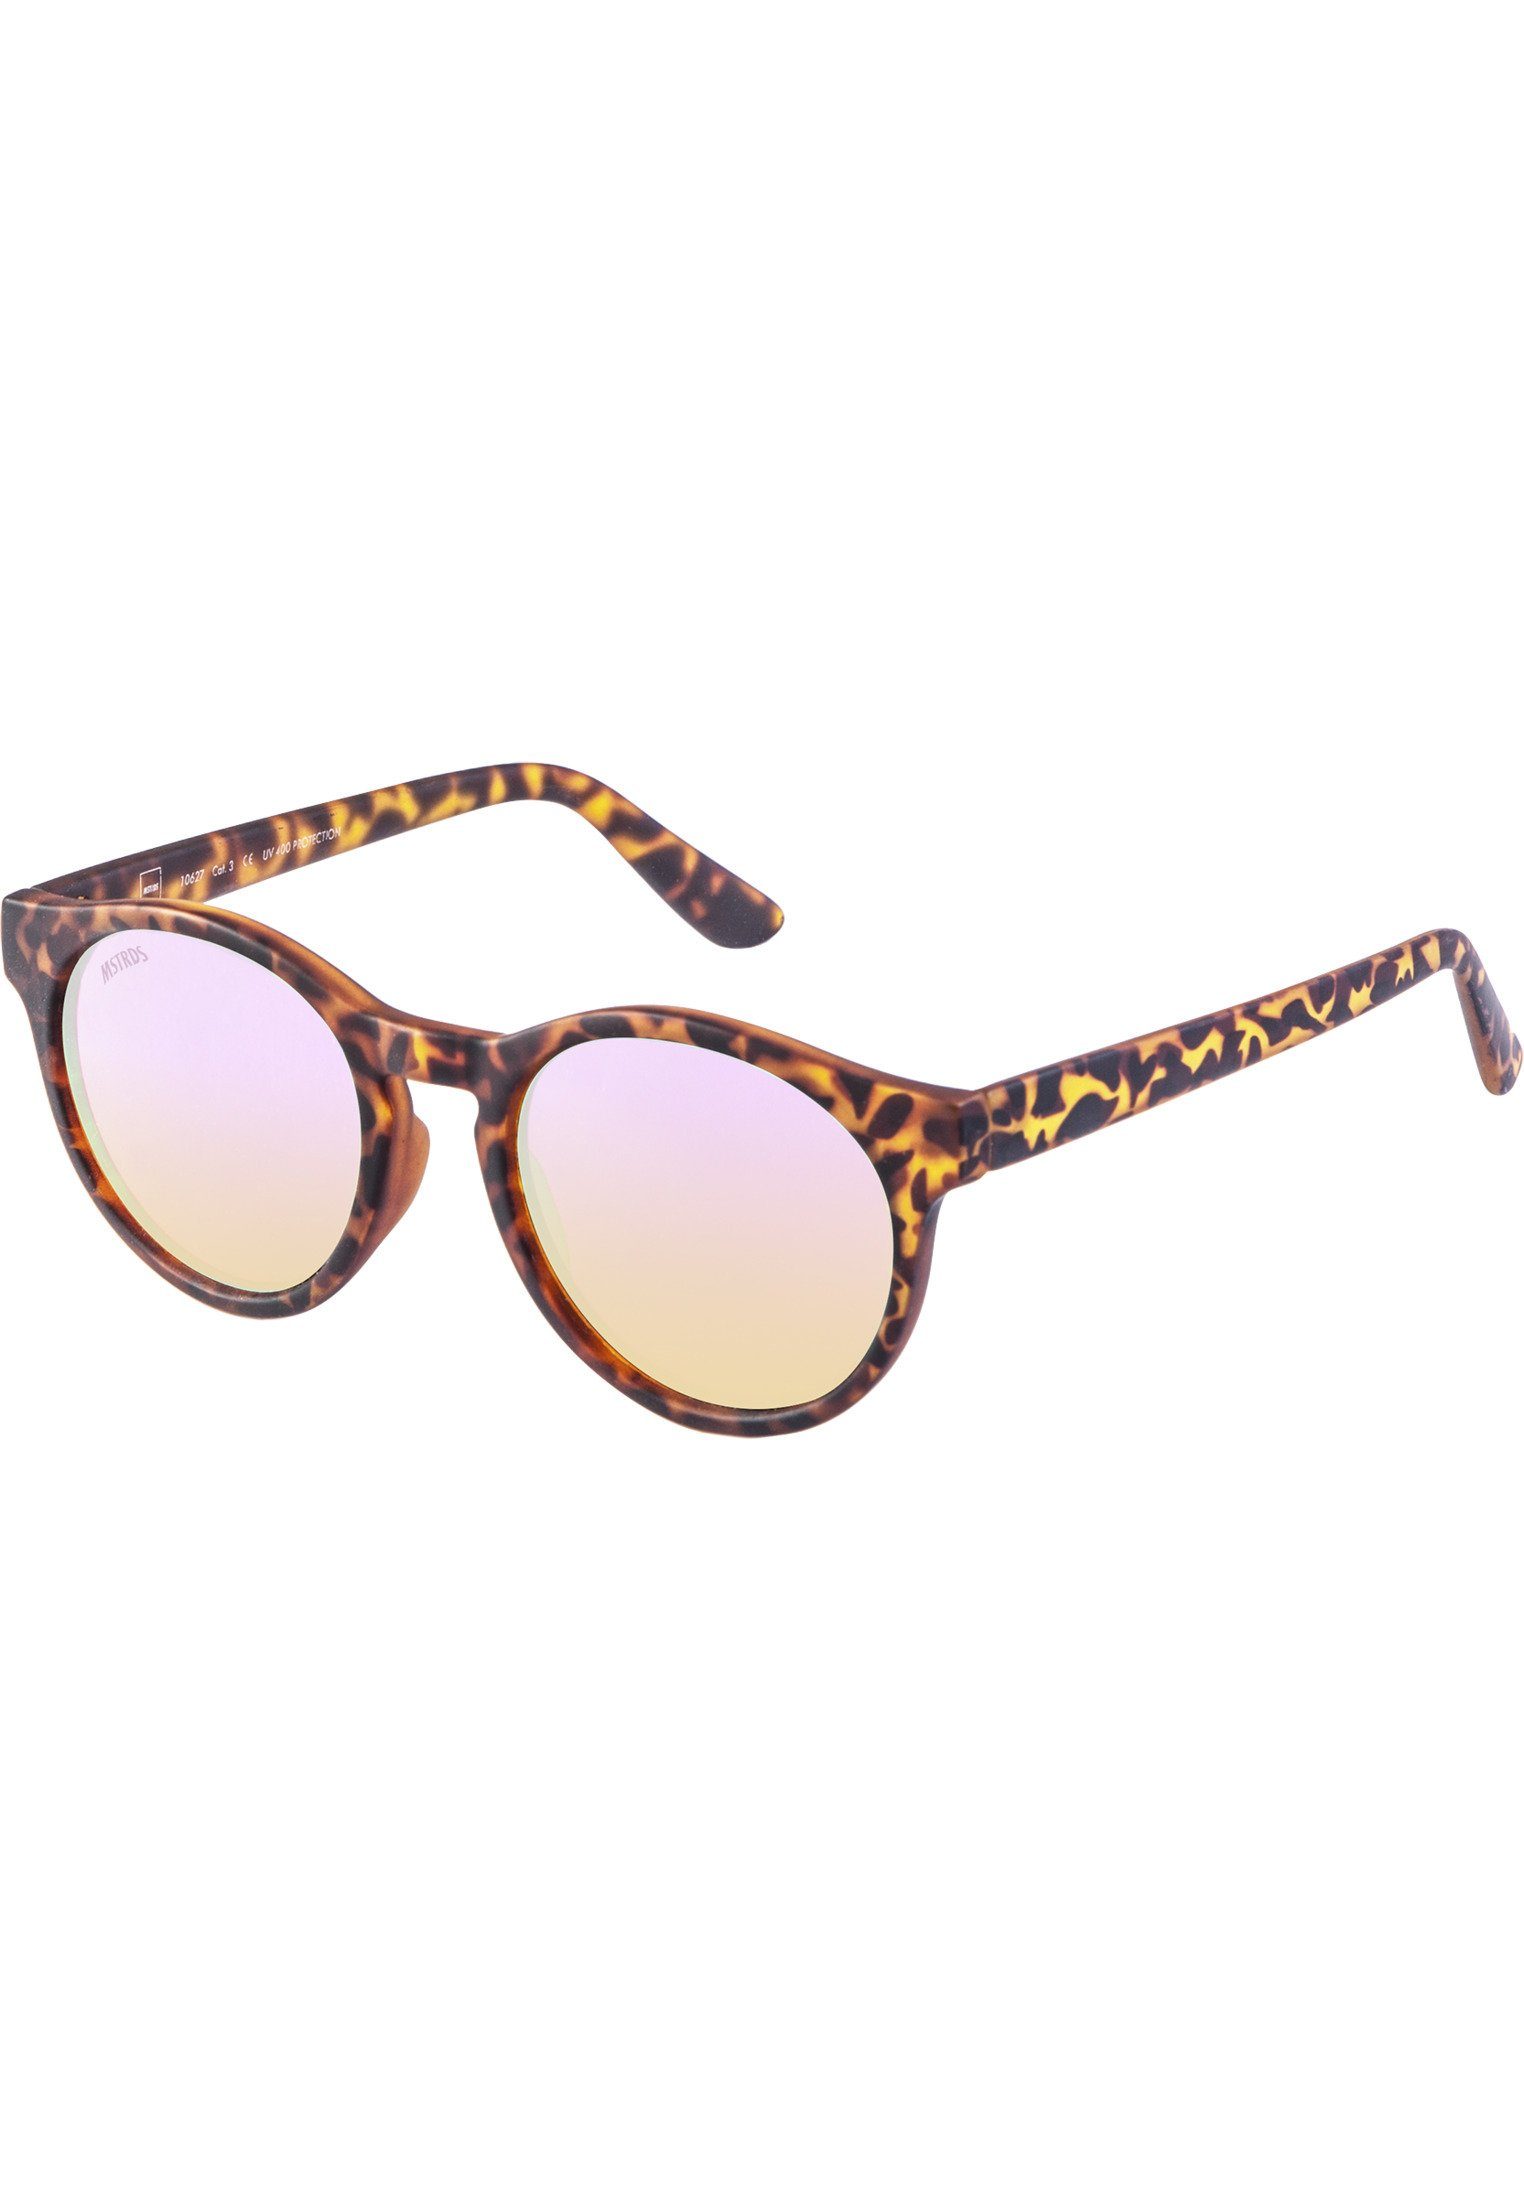 MSTRDS Sonnenbrille Accessoires Sunglasses Sunrise havanna/rosé